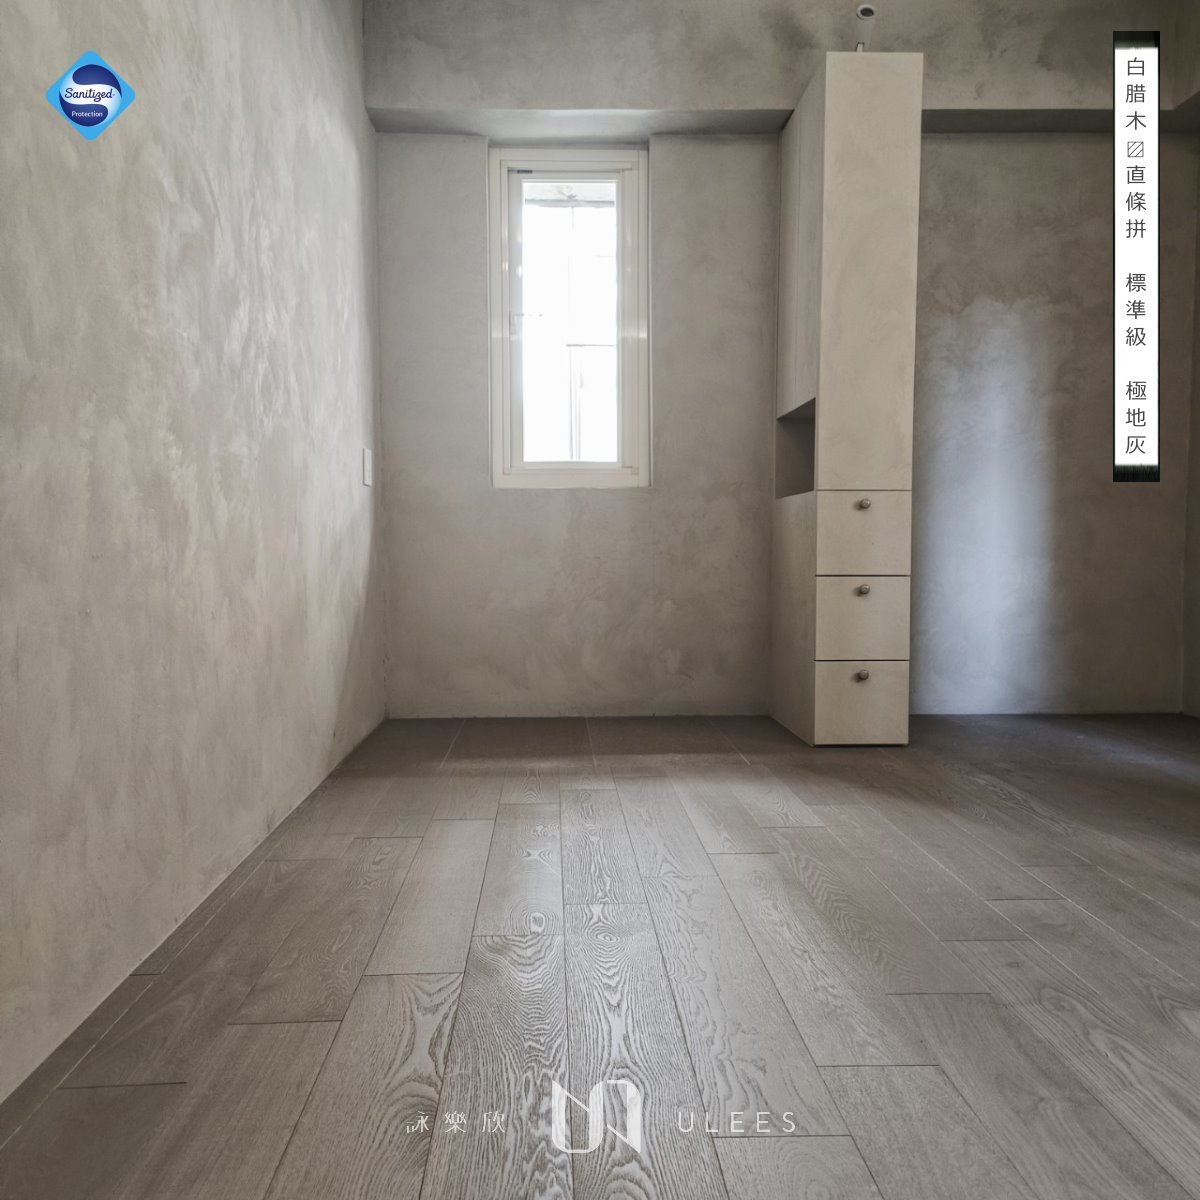 台北木地板施工優質推薦-詠樂欣木地板